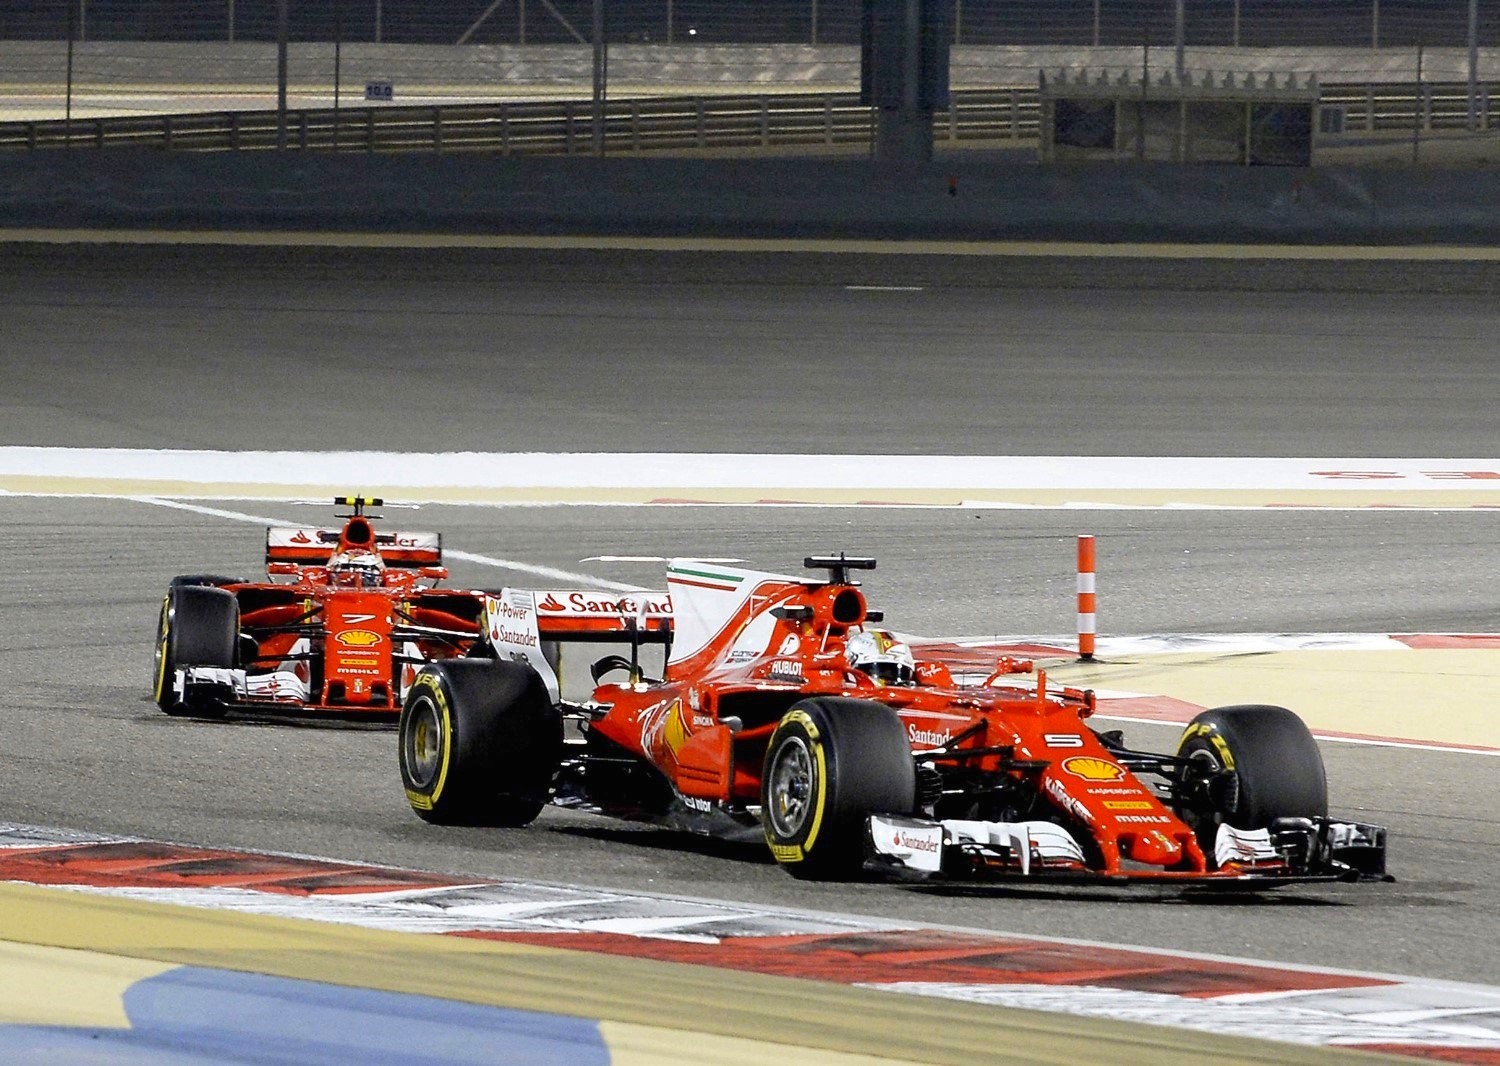 Vettel leads Raikkonen